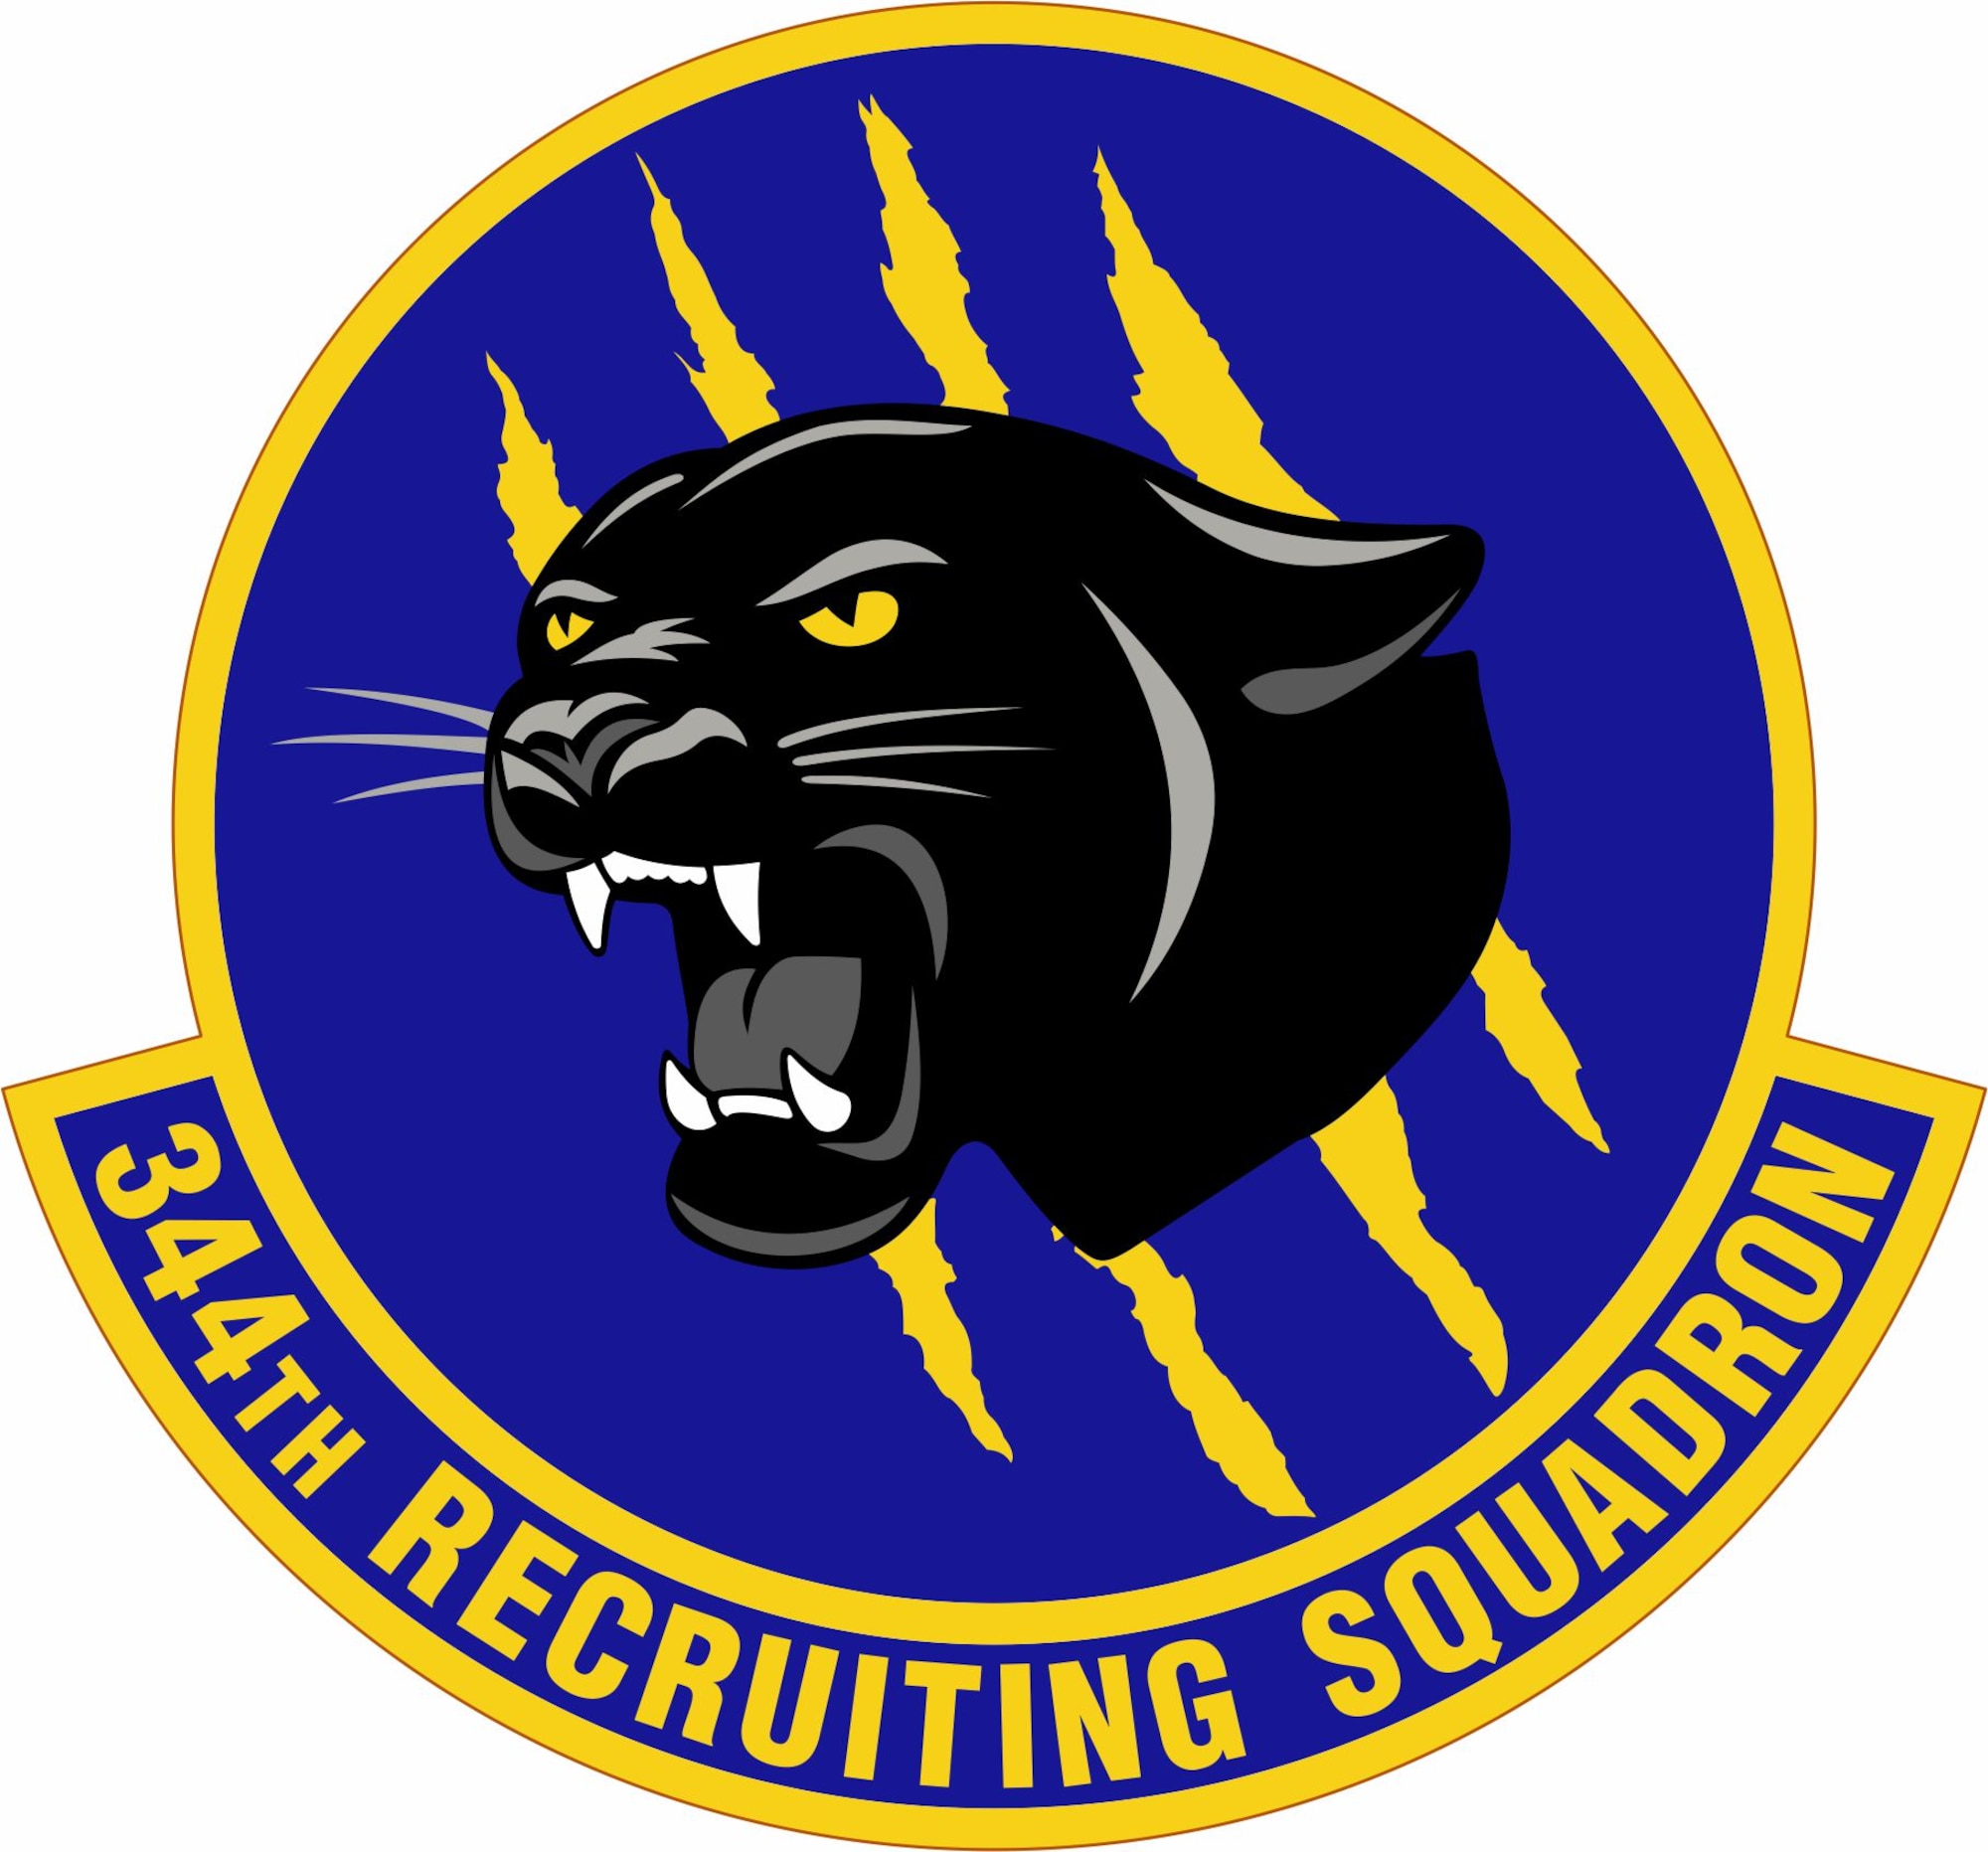 344th Recruiting Squadron